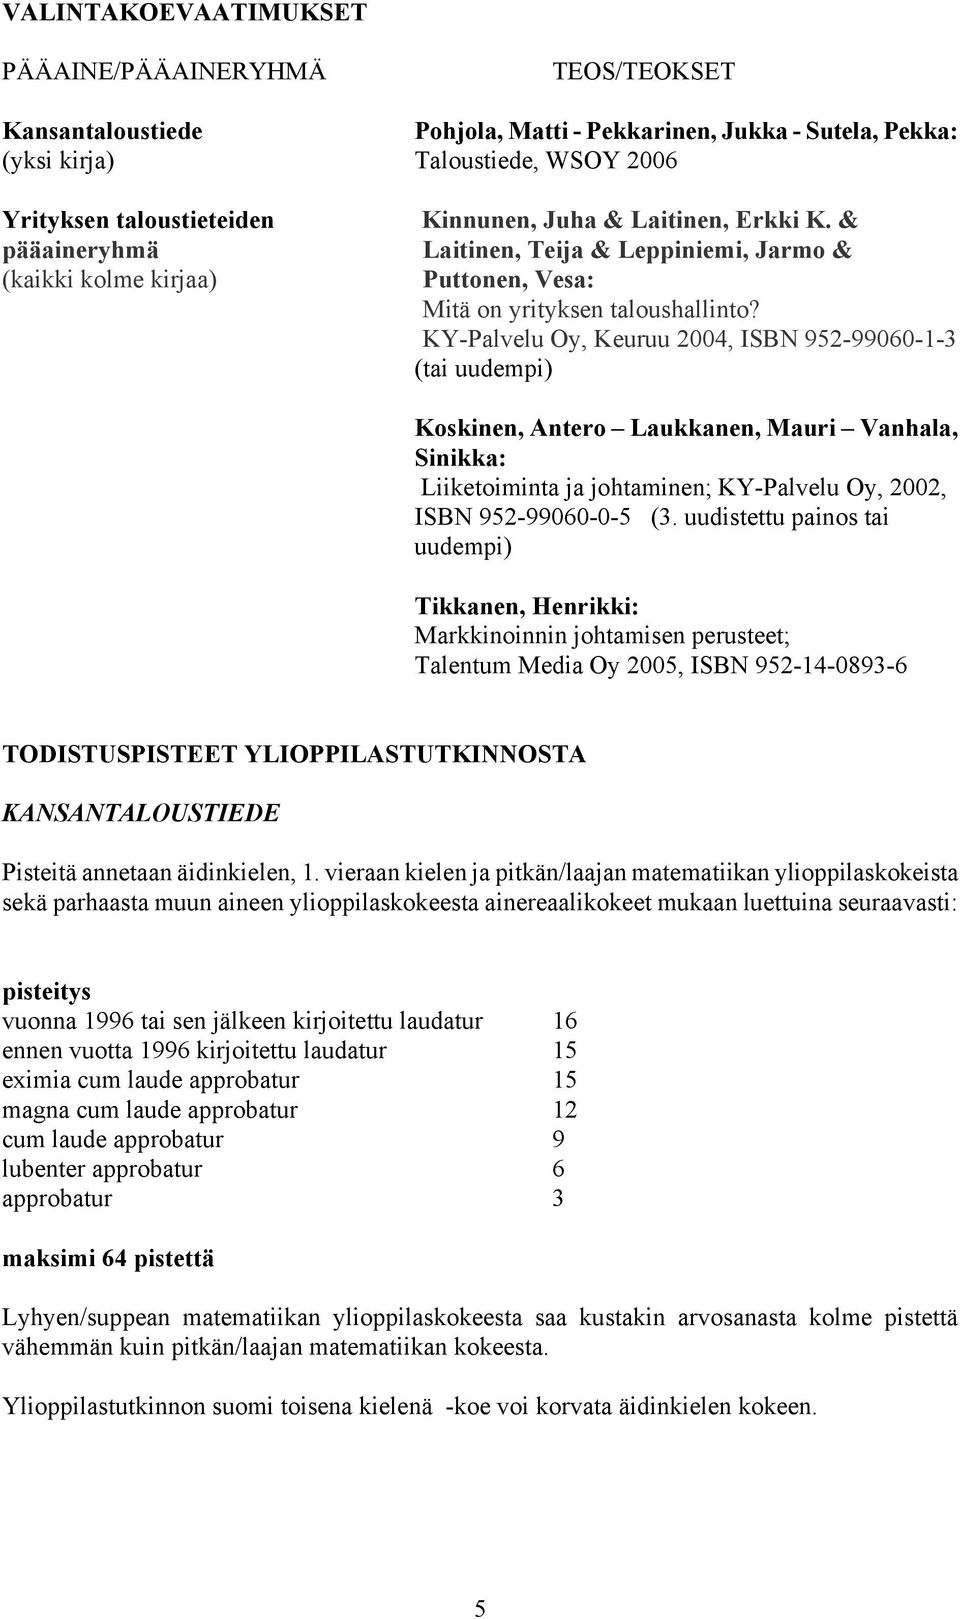 KY-Palvelu Oy, Keuruu 2004, ISBN 952-99060-1-3 (tai uudempi) Koskinen, Antero Laukkanen, Mauri Vanhala, Sinikka: Liiketoiminta ja johtaminen; KY-Palvelu Oy, 2002, ISBN 952-99060-0-5 (3.